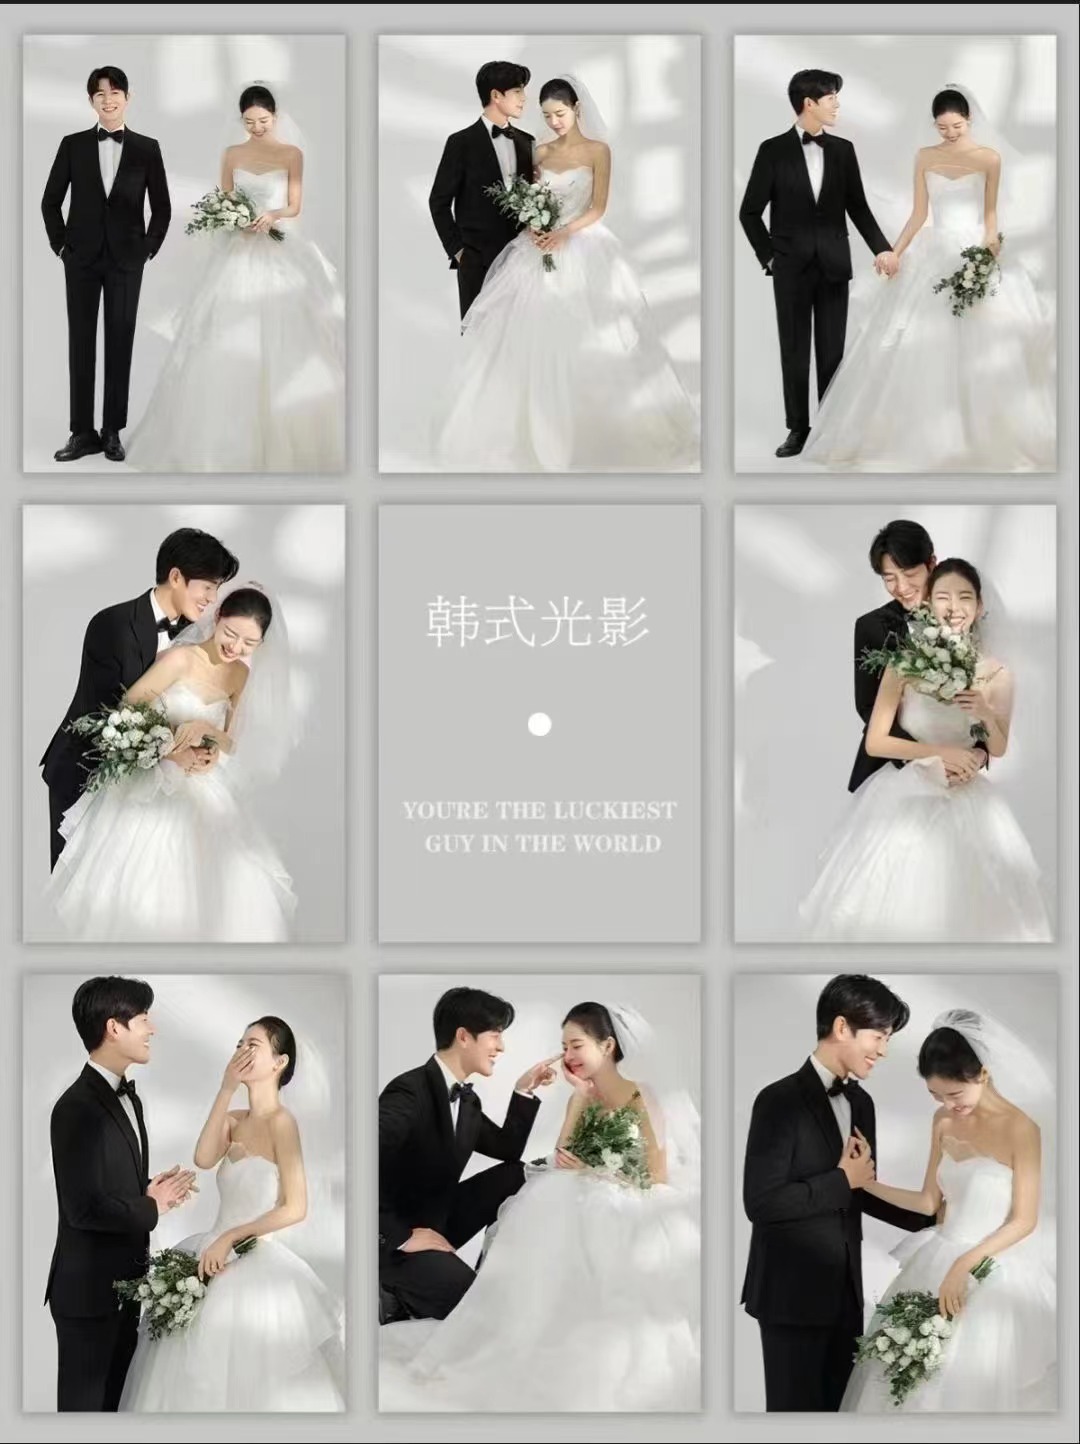 【应急拍】韩式婚纱照/婚纱摄影/纪念照5店通用